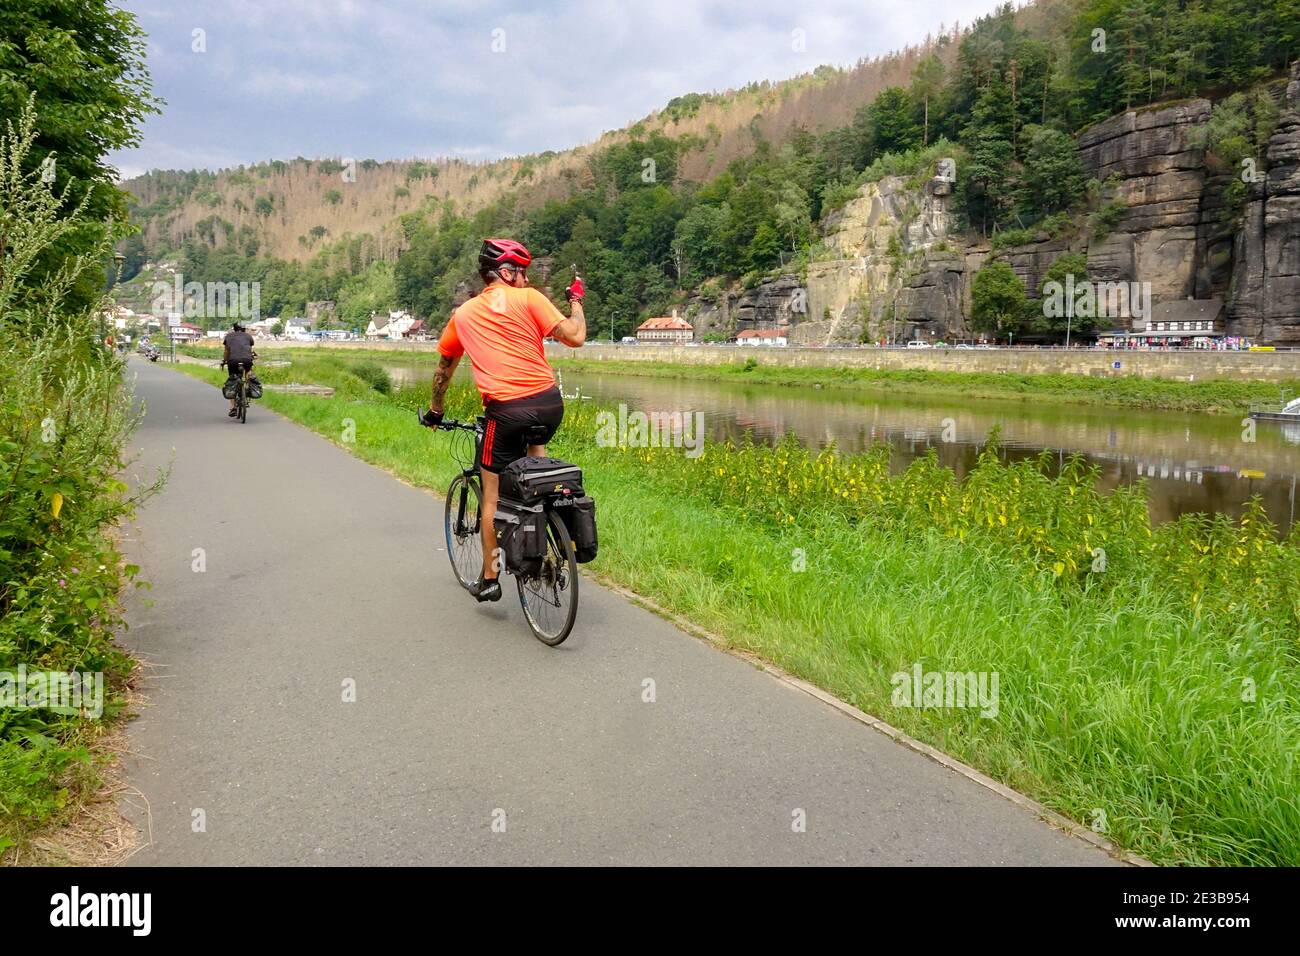 Un homme sur une promenade à vélo dans la vallée de L'Elbe Saxe Suisse Allemagne cycliste nature Banque D'Images